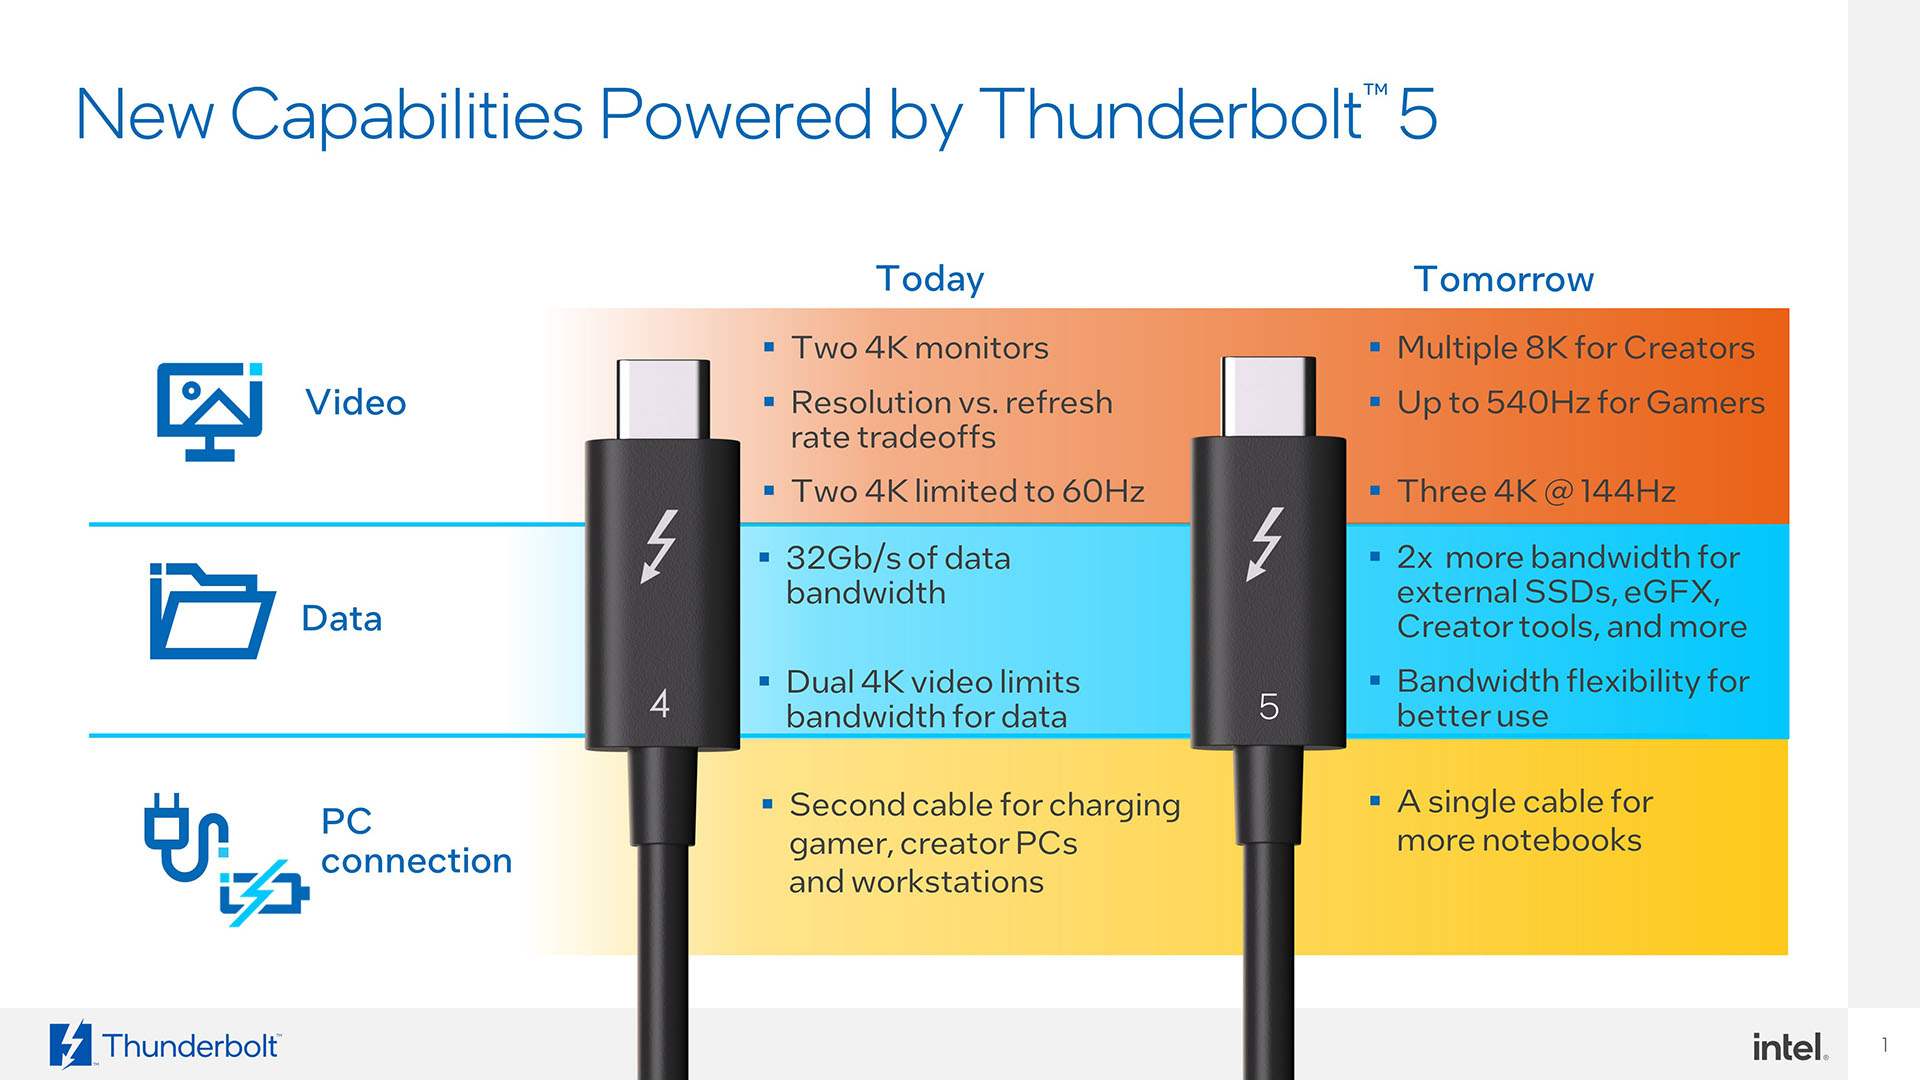 Intel Thunderbolt 5 specs: Thunderbolt 5 capabilities